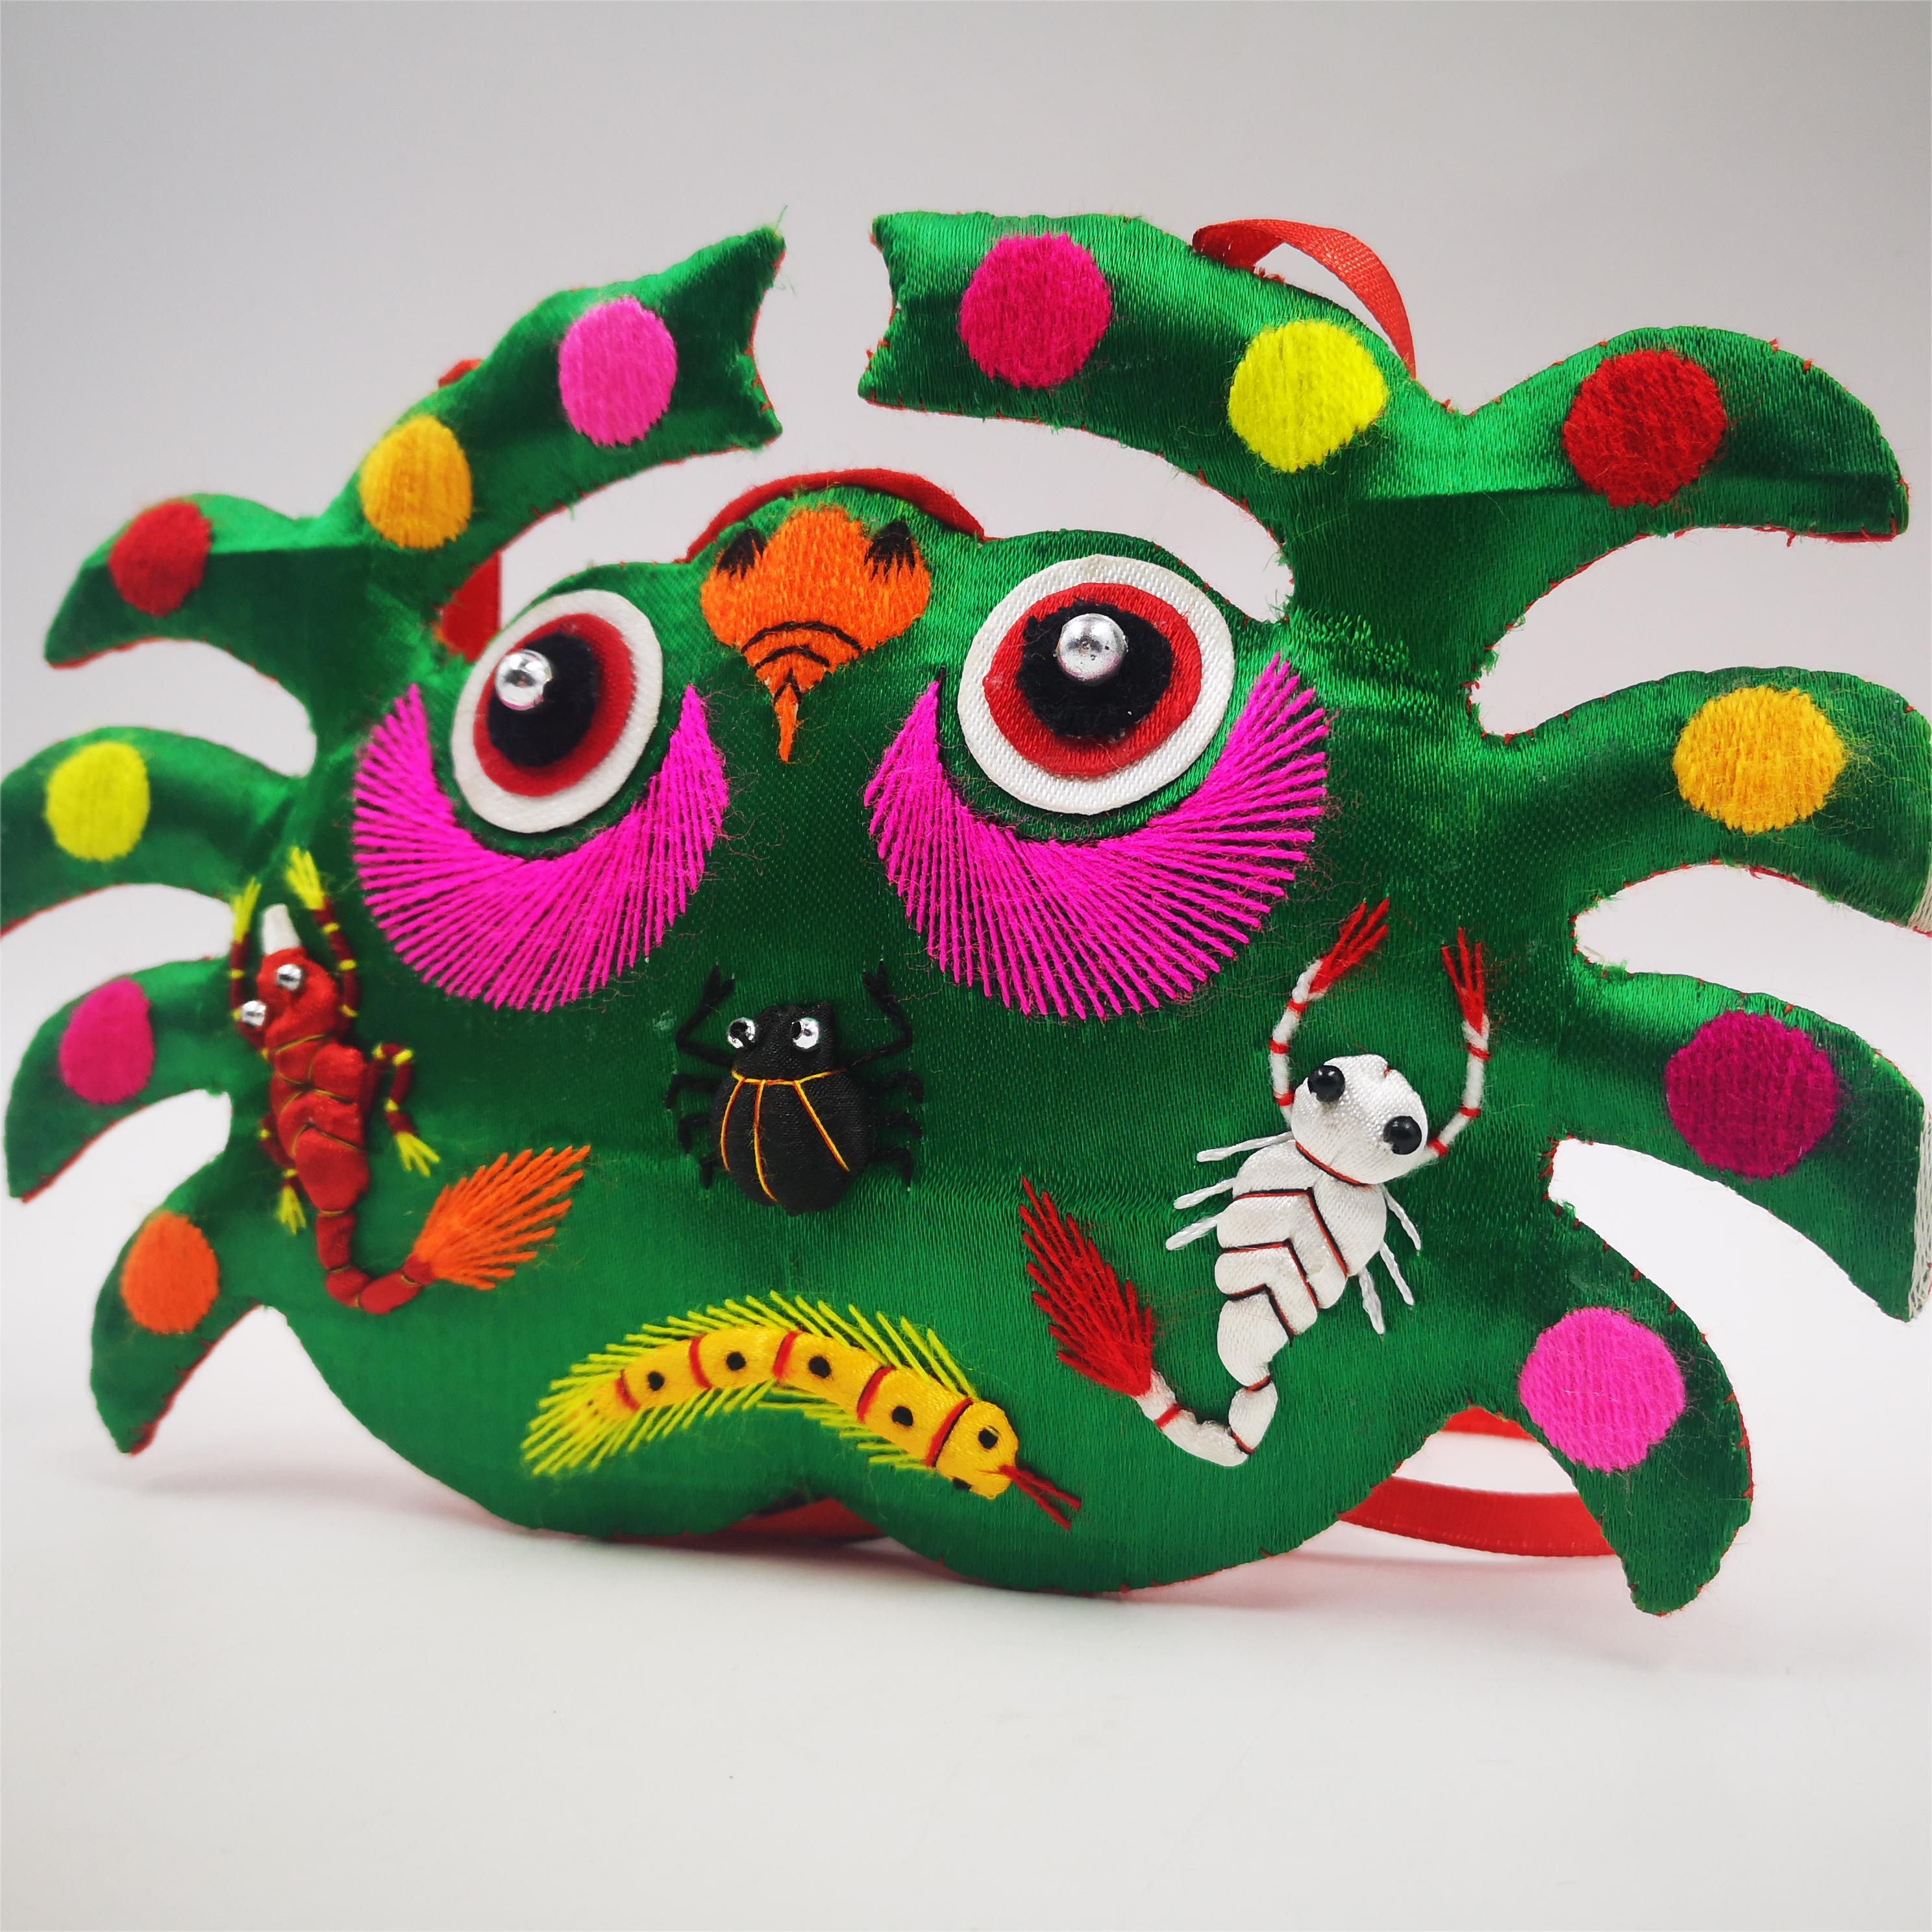 庆阳蘭芳香包纯手工绣制传统民间手工艺品儿童小螃蟹小青蛙挂件